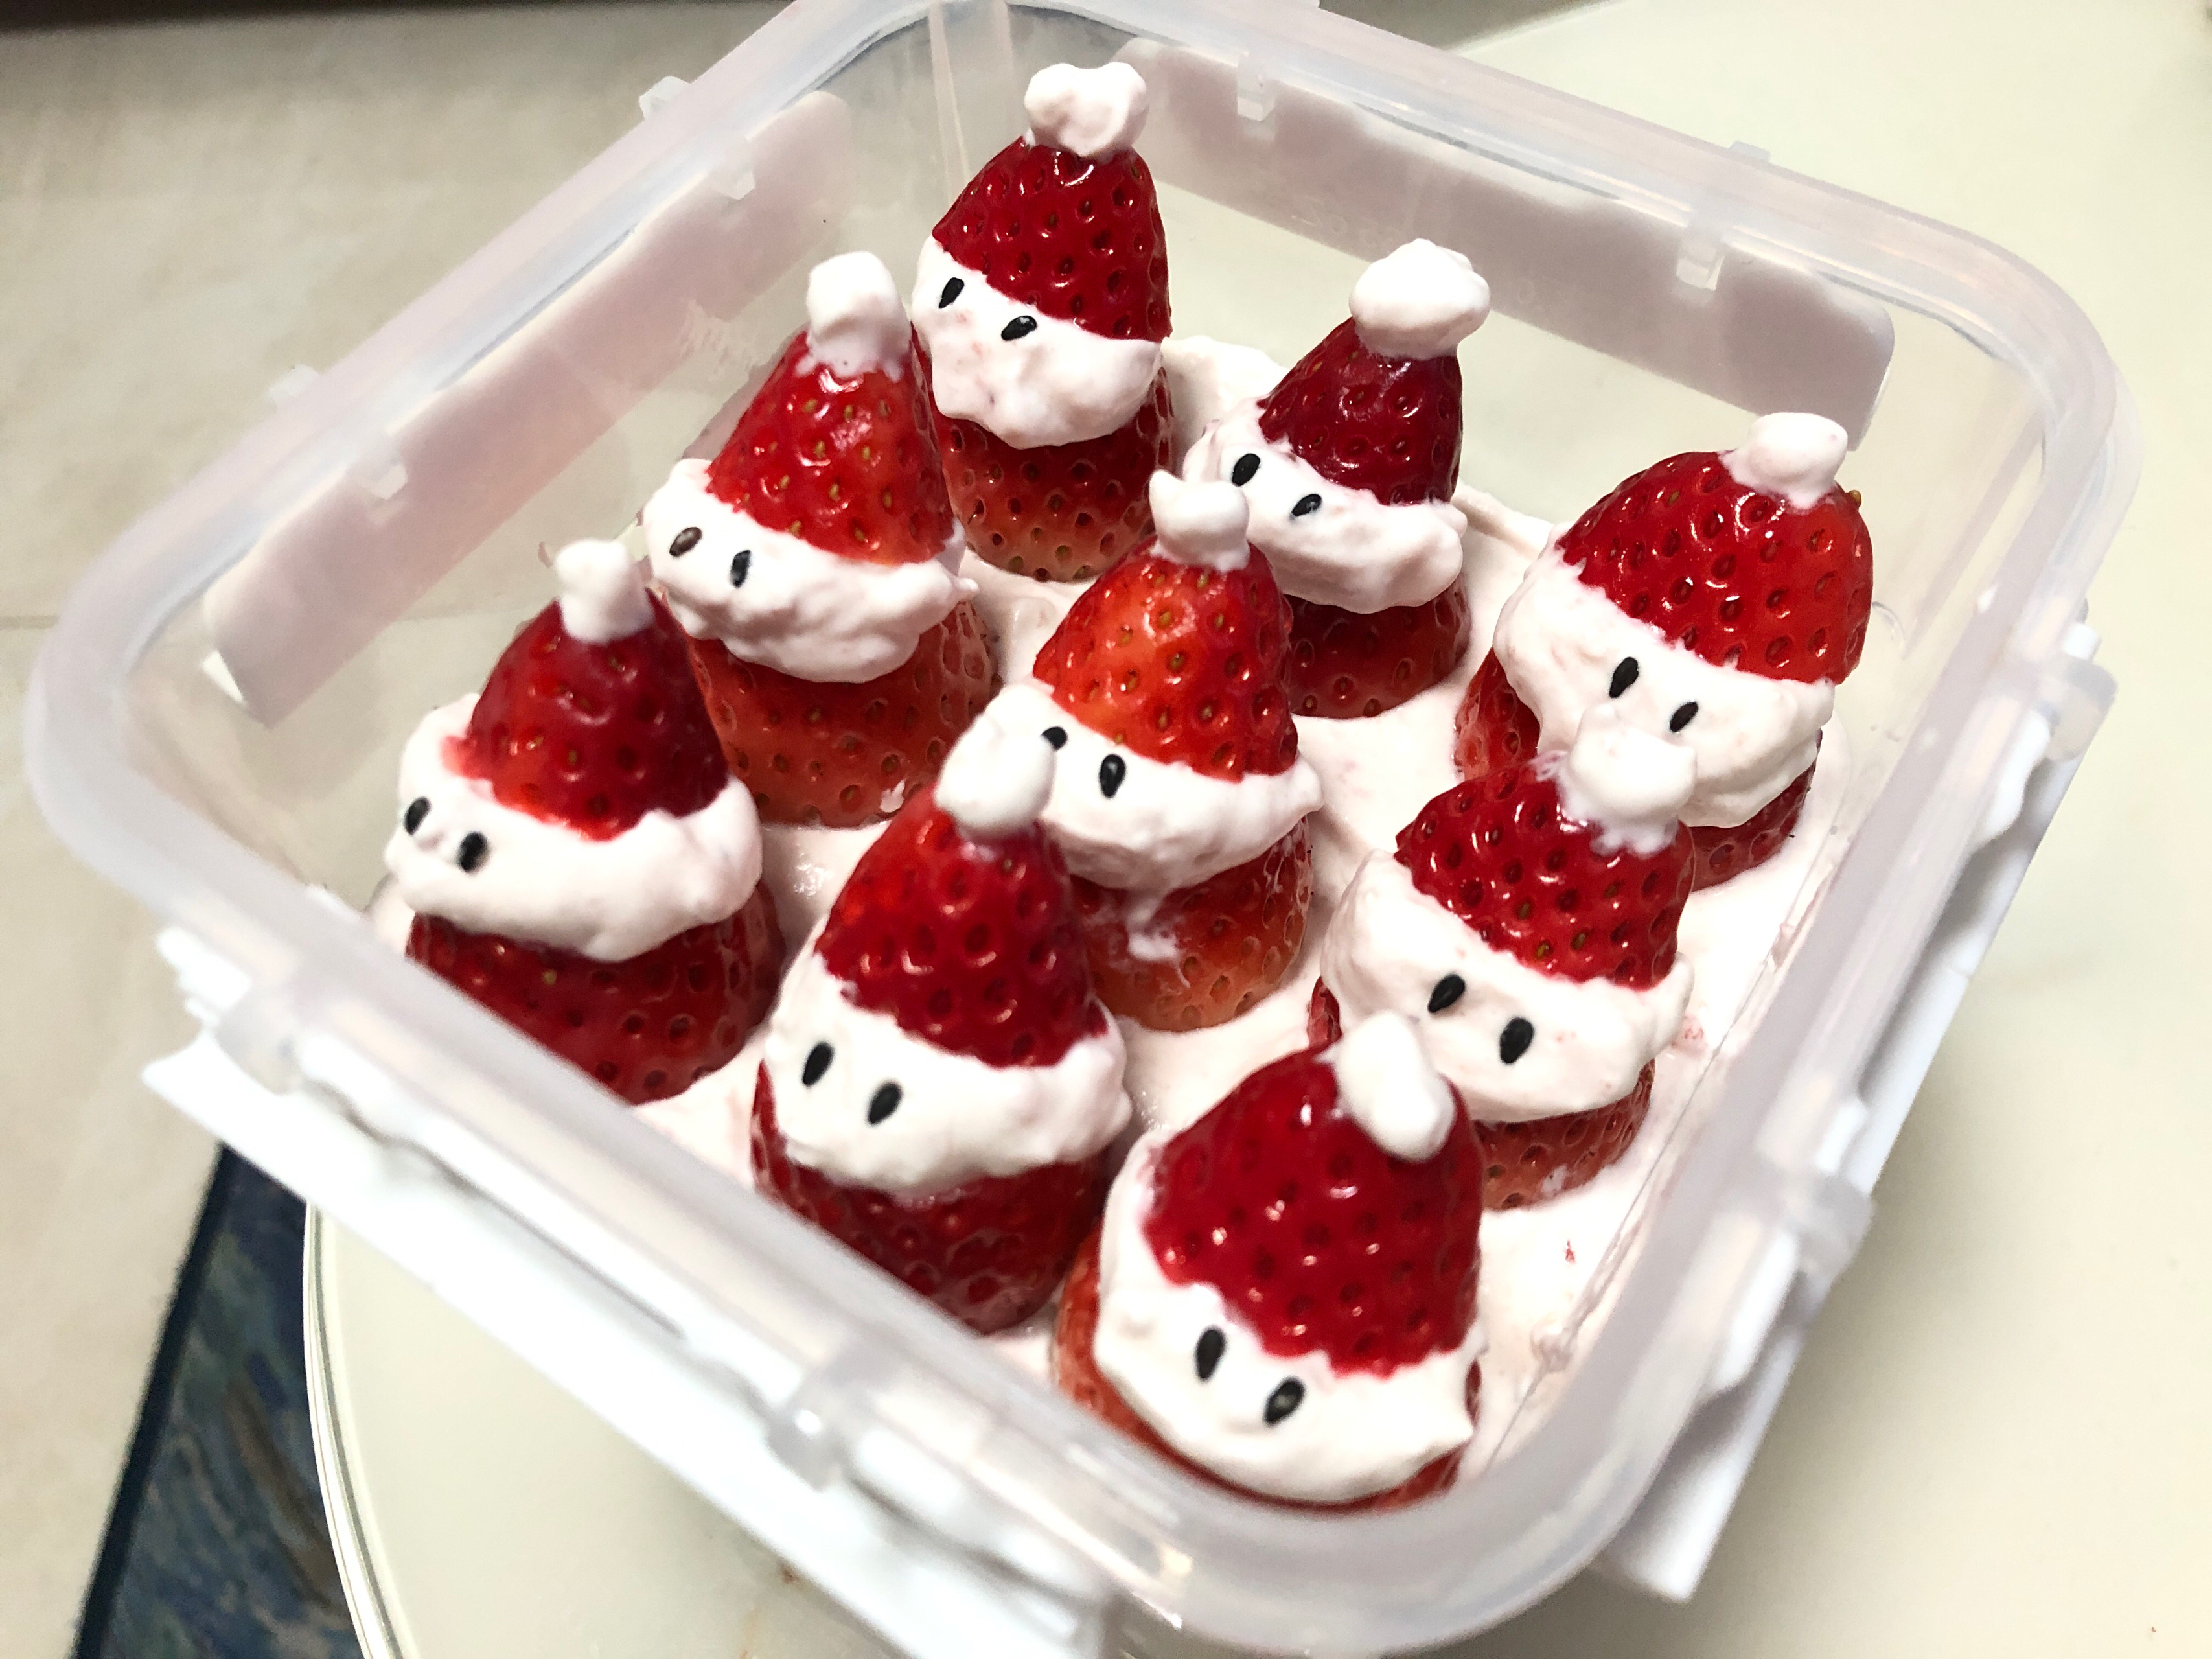 草莓圣诞老人、圣诞雪人